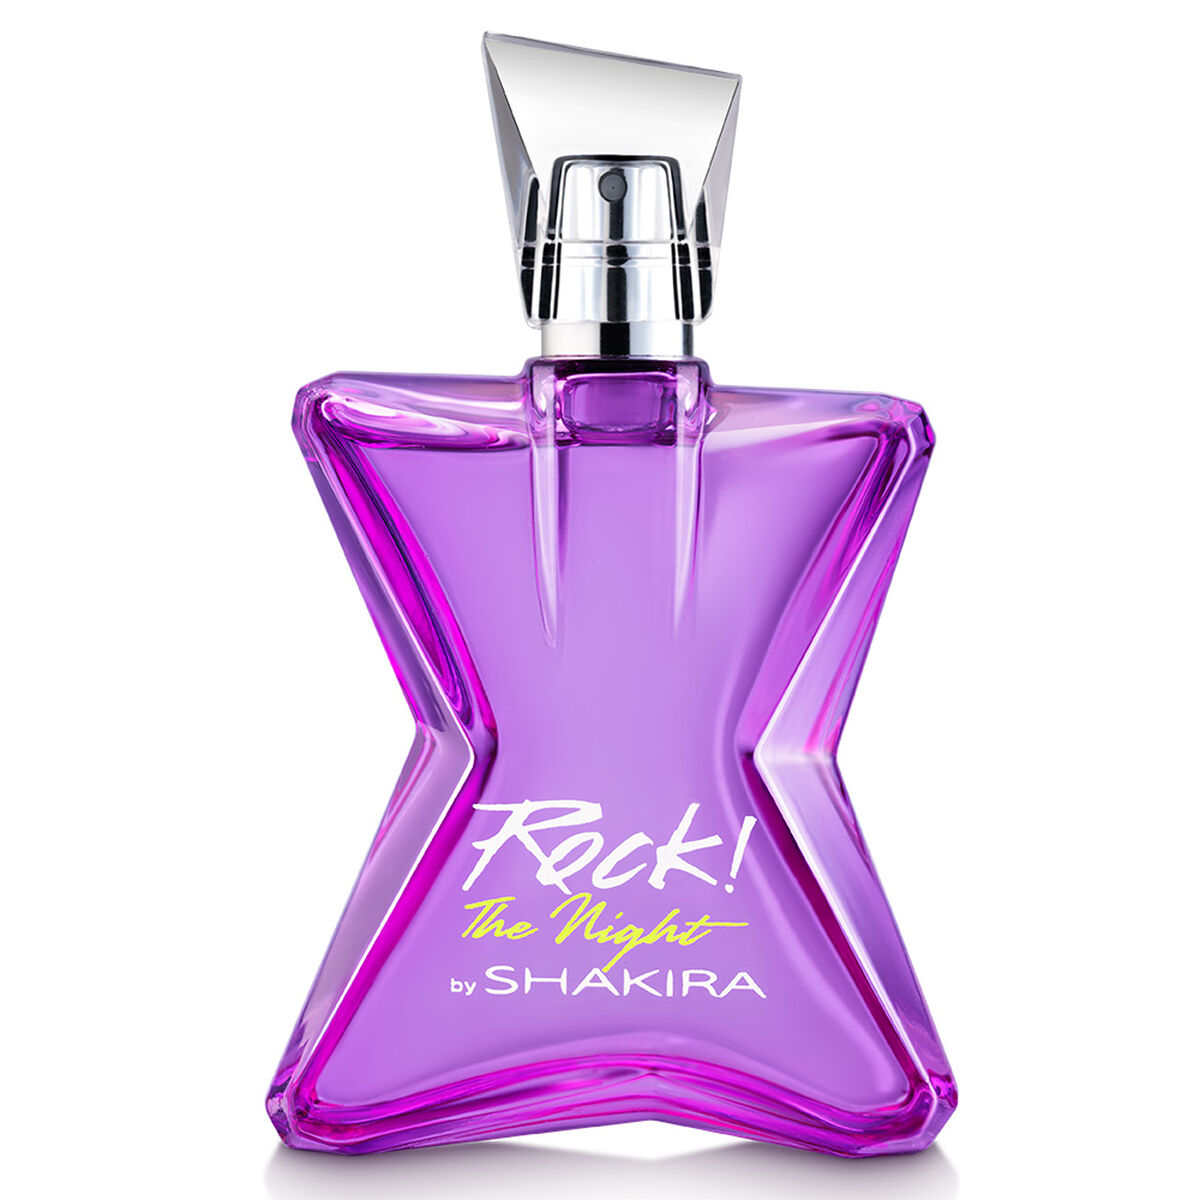 Perfume Shakira Rock The Night 80 ml